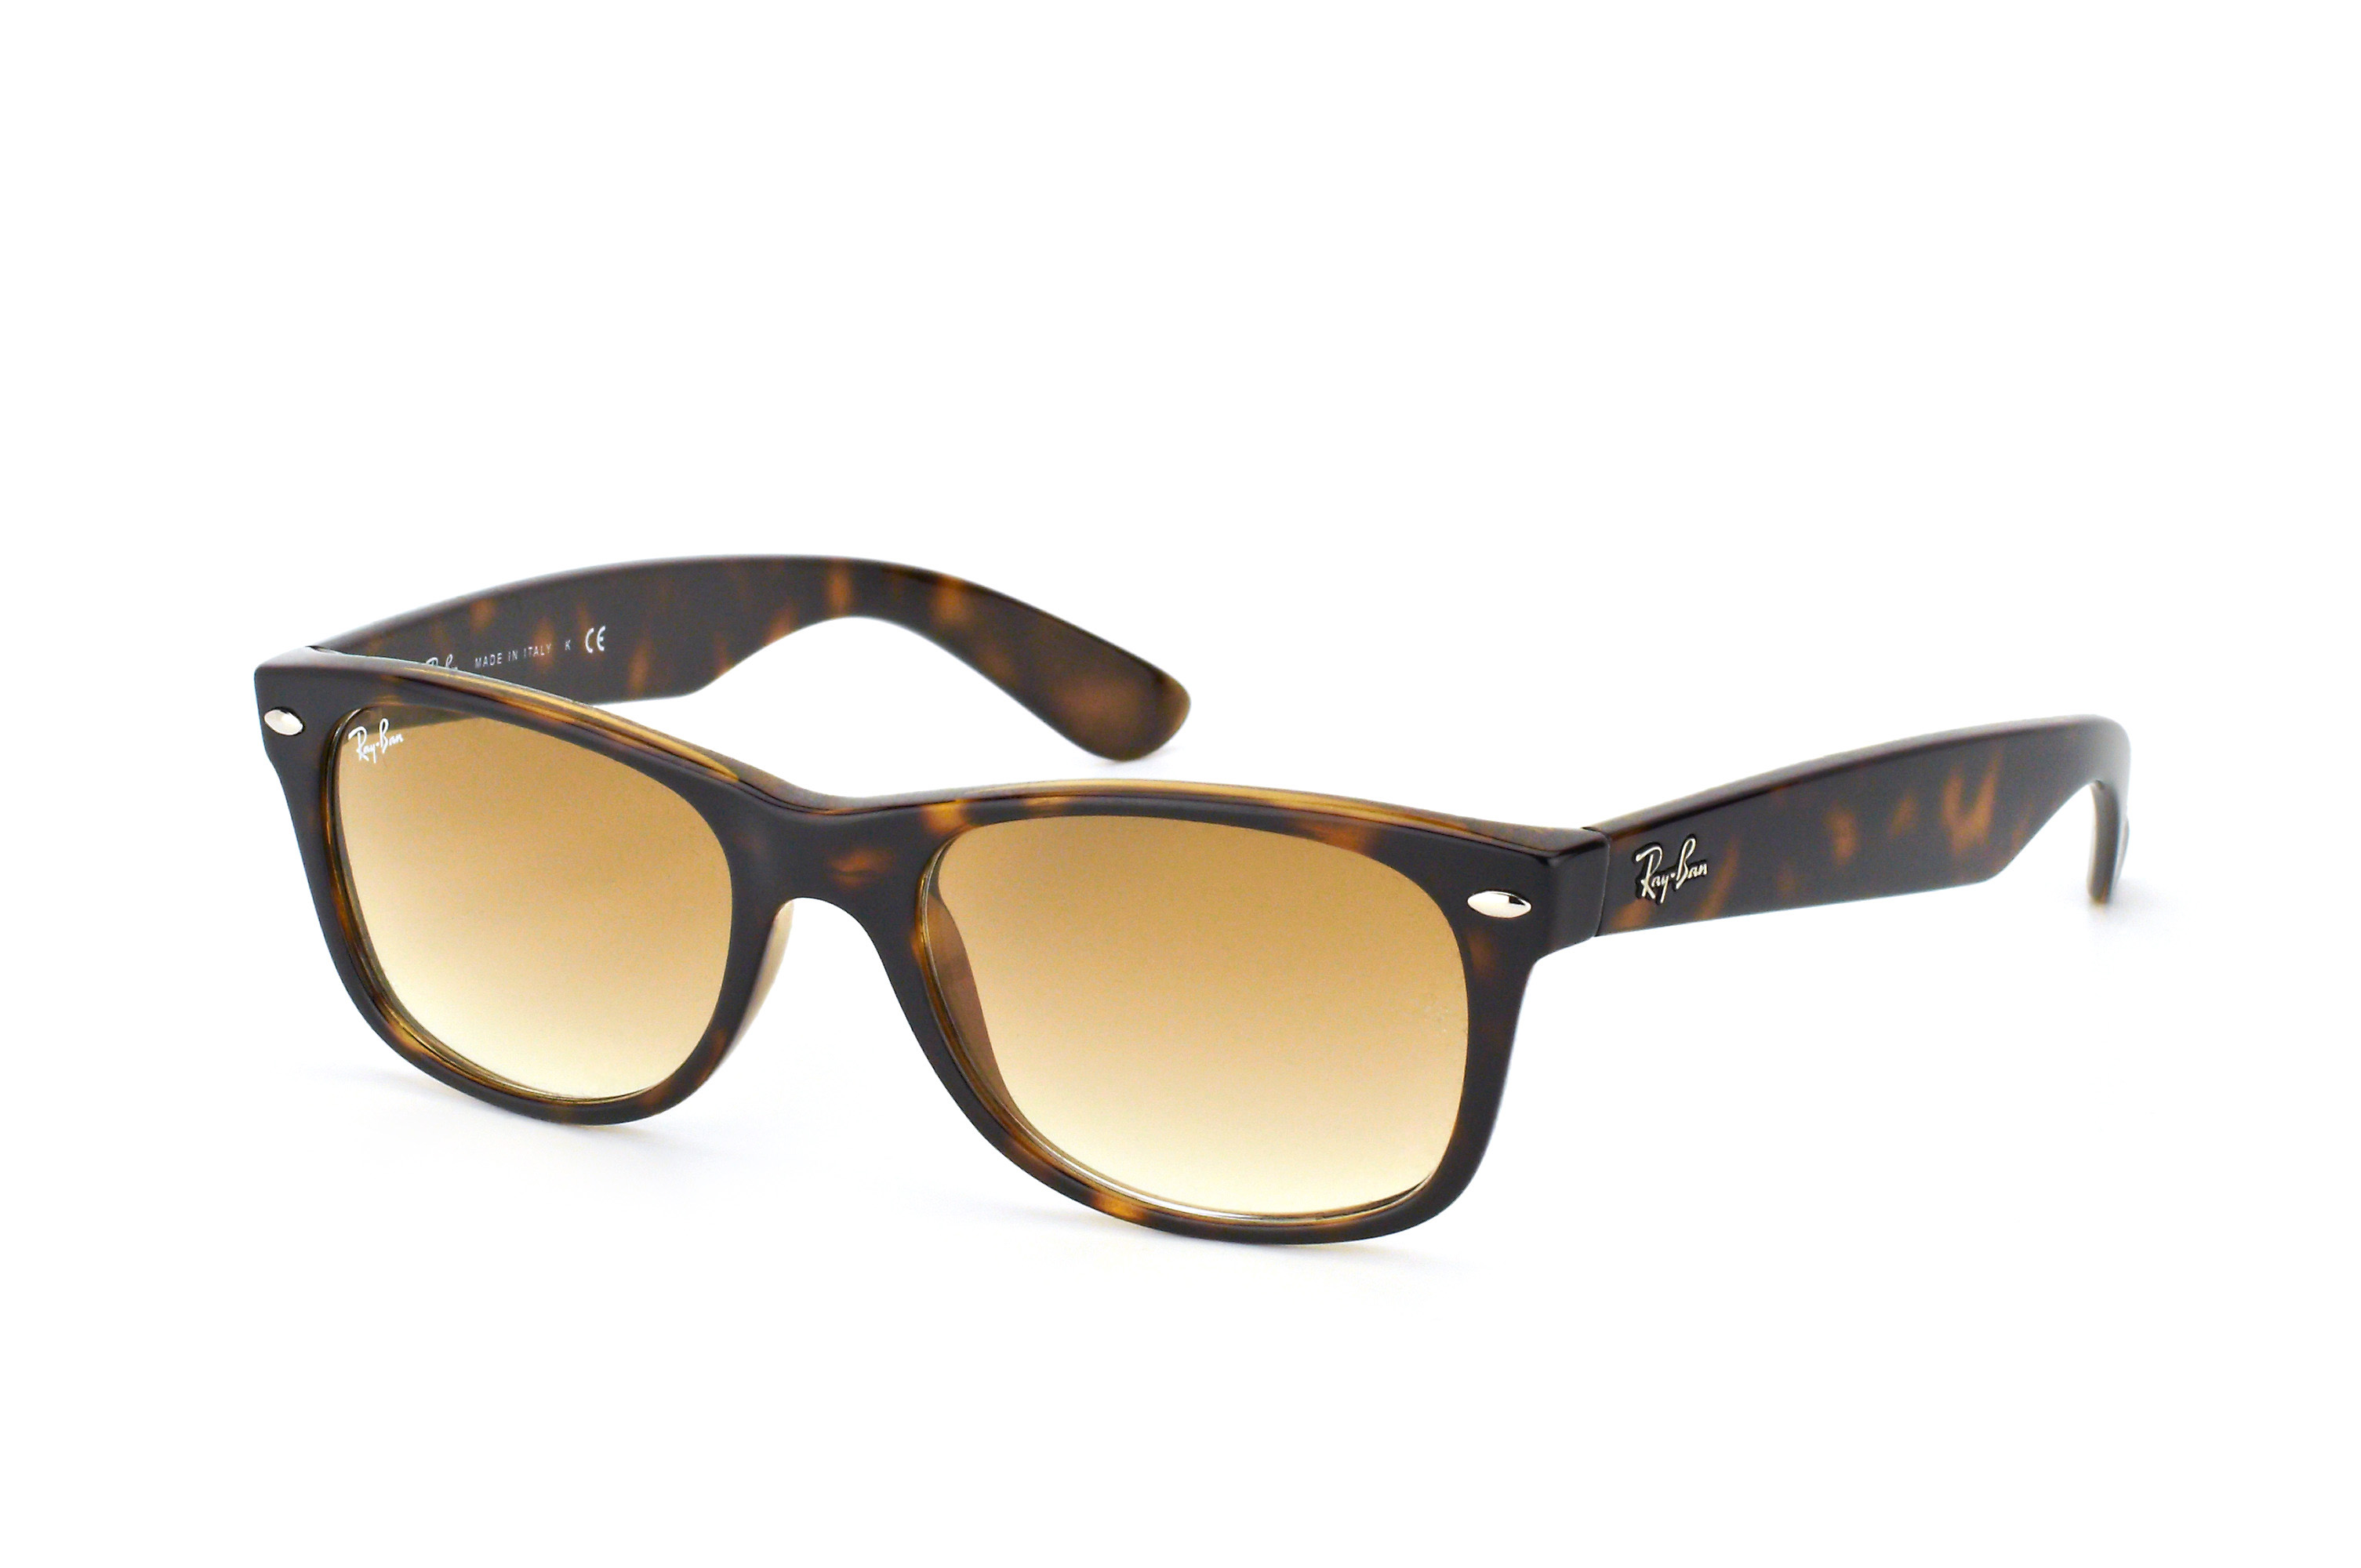 Buy Ray-Ban New Wayfarer RB 2132 710/51 Sunglasses